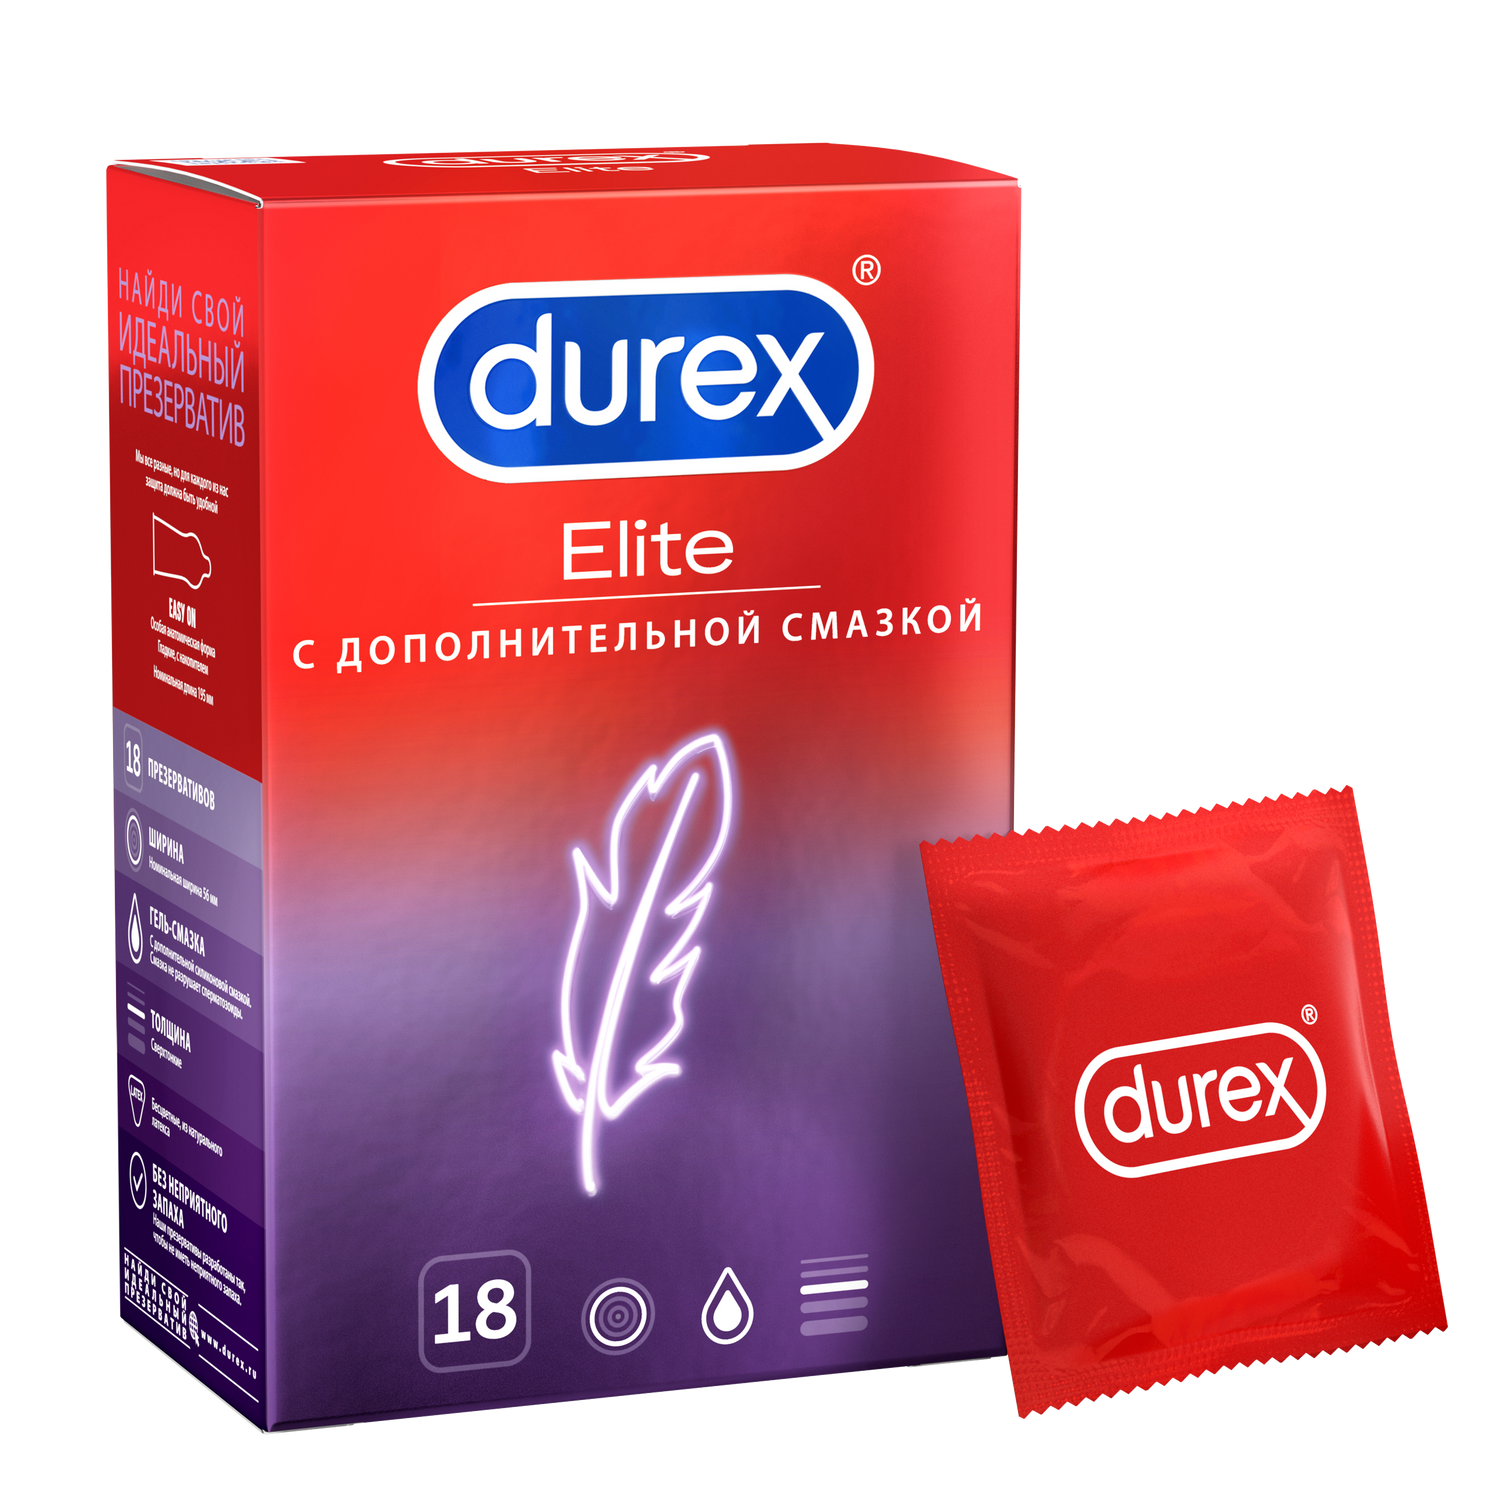 Durex Elite, презервативы сверхтонкие, 18 шт. ближе чем ты думаешь